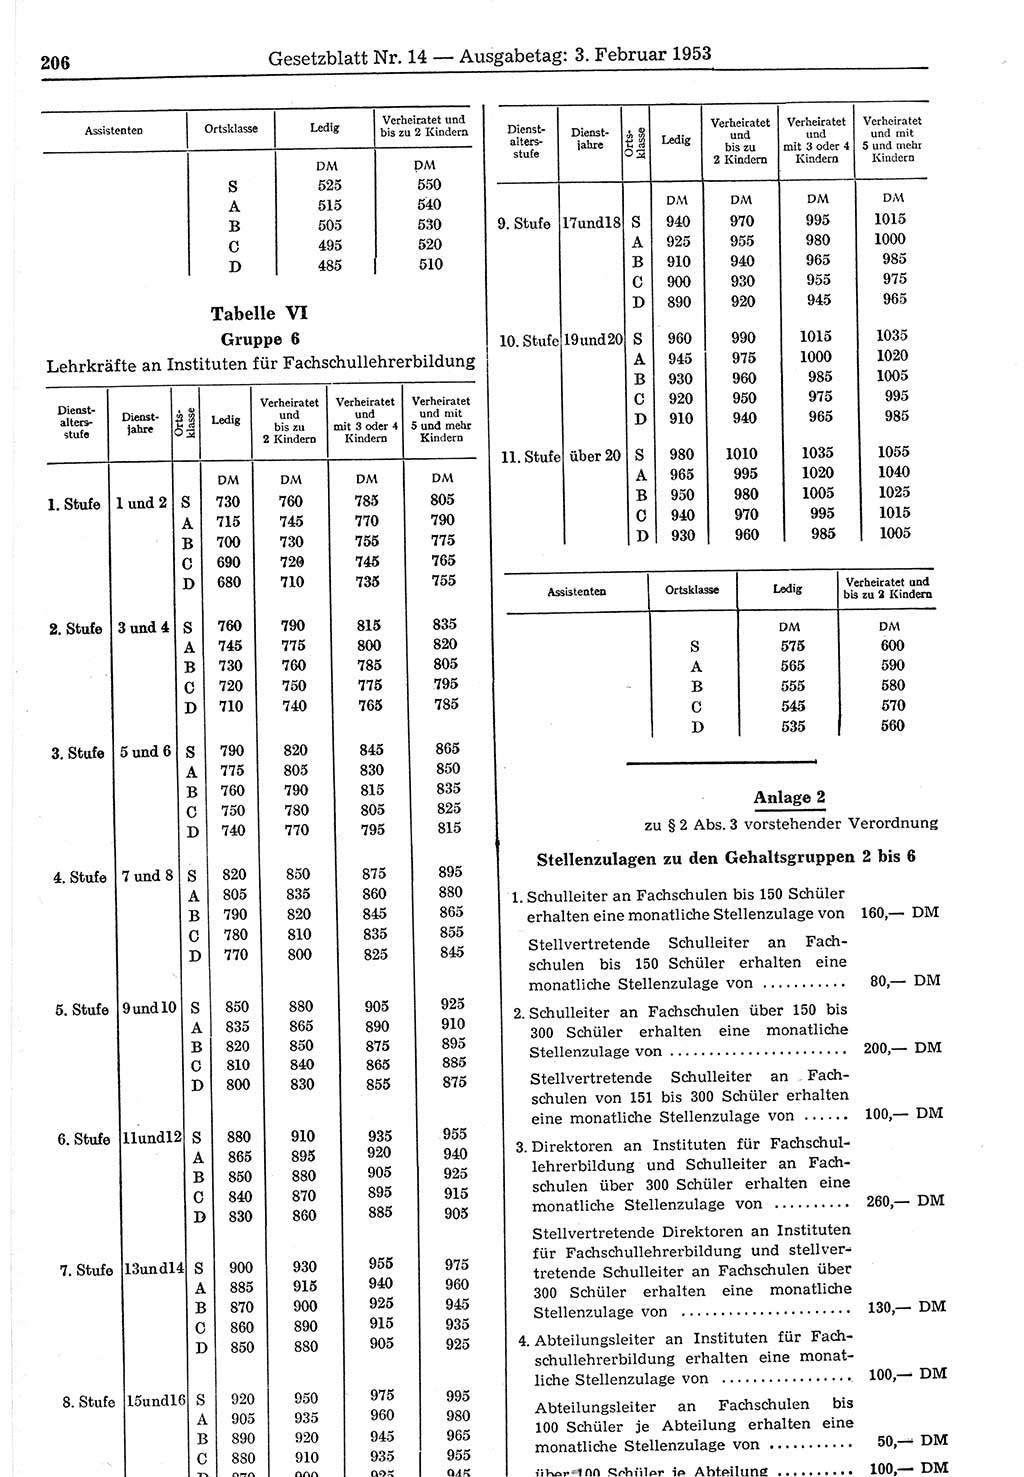 Gesetzblatt (GBl.) der Deutschen Demokratischen Republik (DDR) 1953, Seite 206 (GBl. DDR 1953, S. 206)